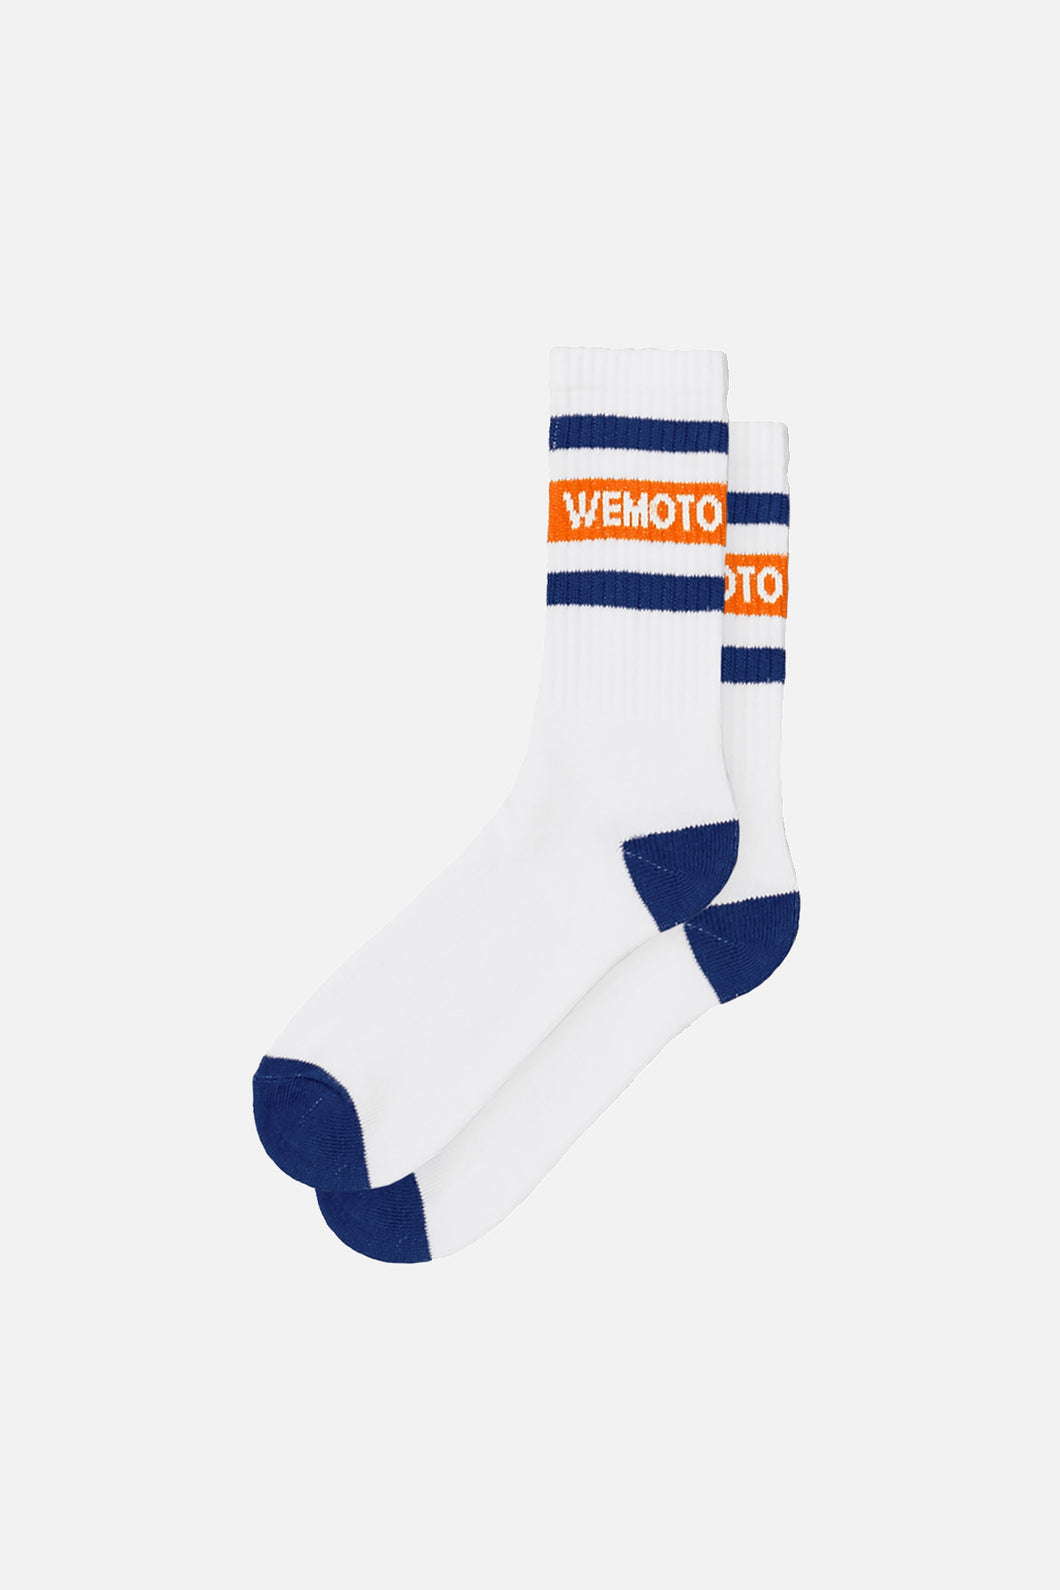 Milburry Socks Navy Blue/Orange